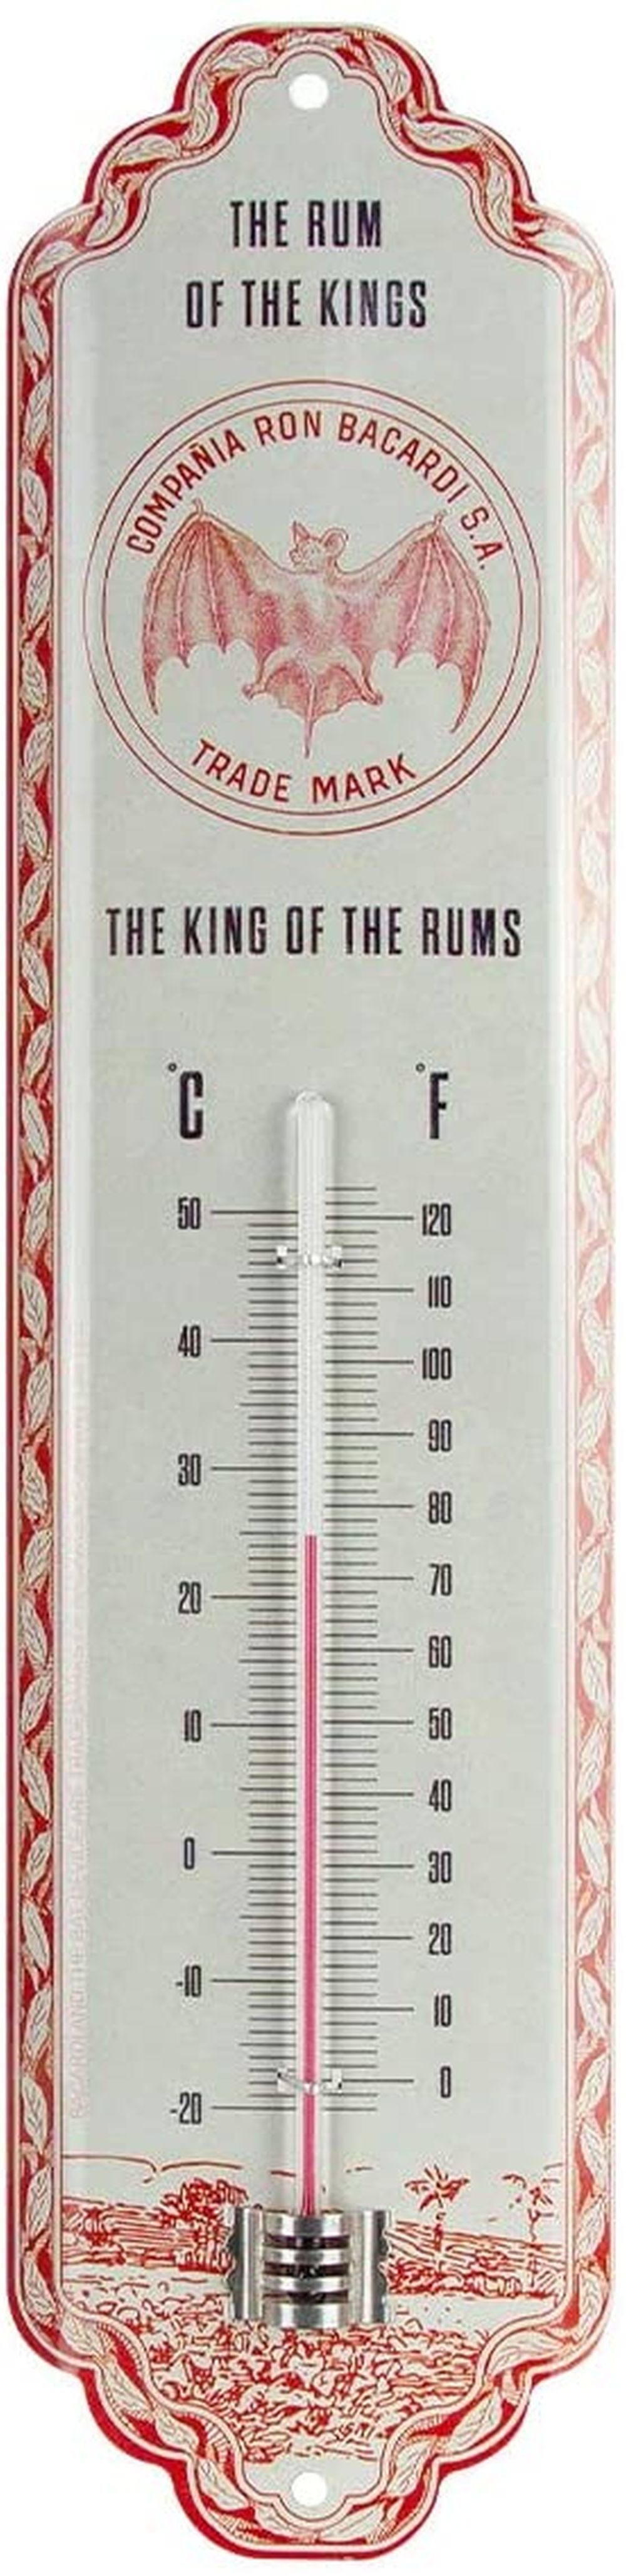 esschert design Fensterthermometer Esschert Design Thermometer mit Schlüsselversteck  Versteck für Schlüssel weiss, Thermometer Schlüsselversteck